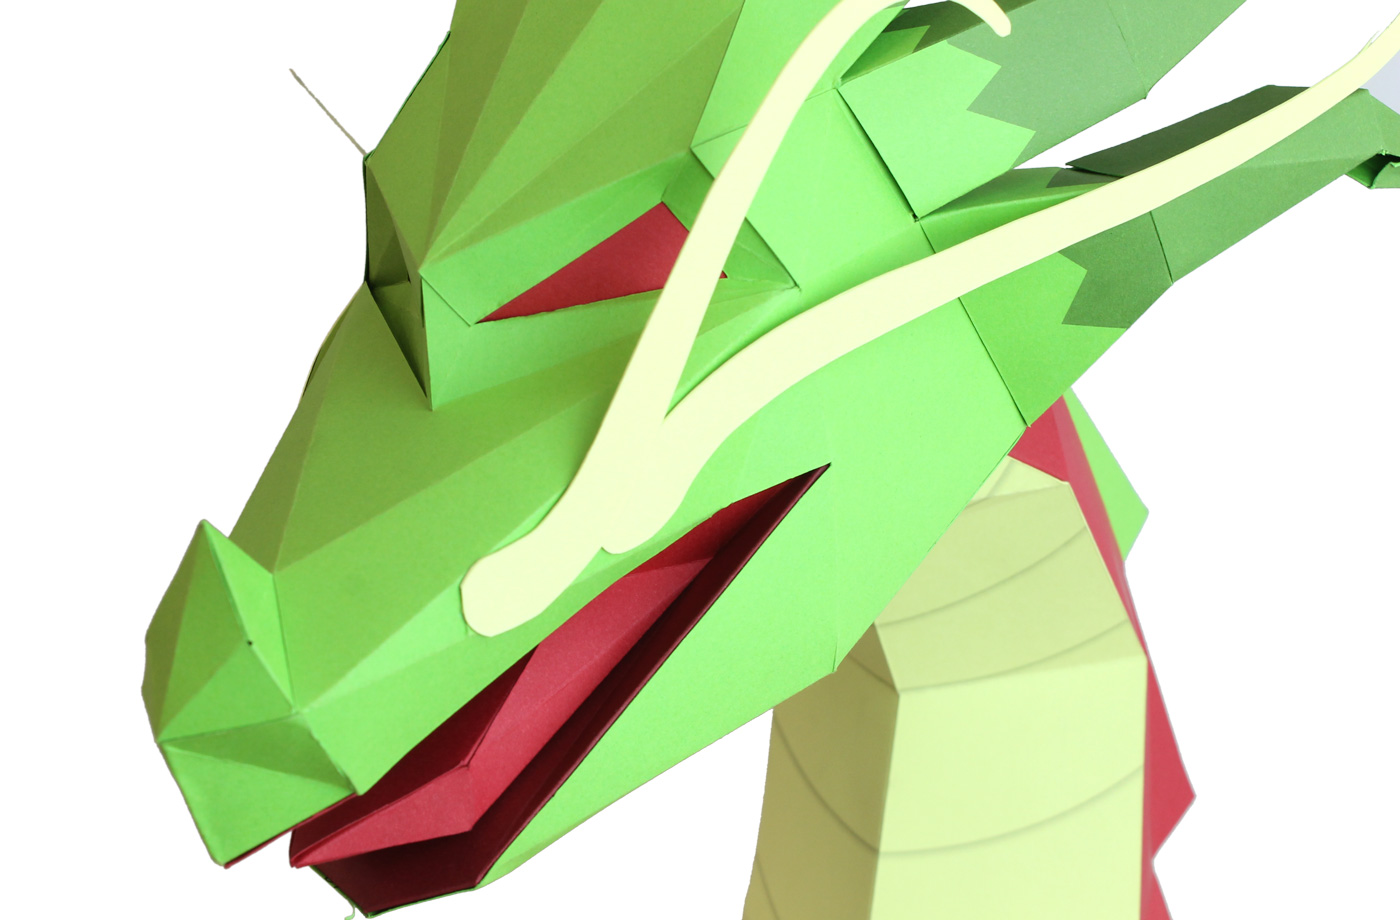 Dragon asiatique en papier 3D